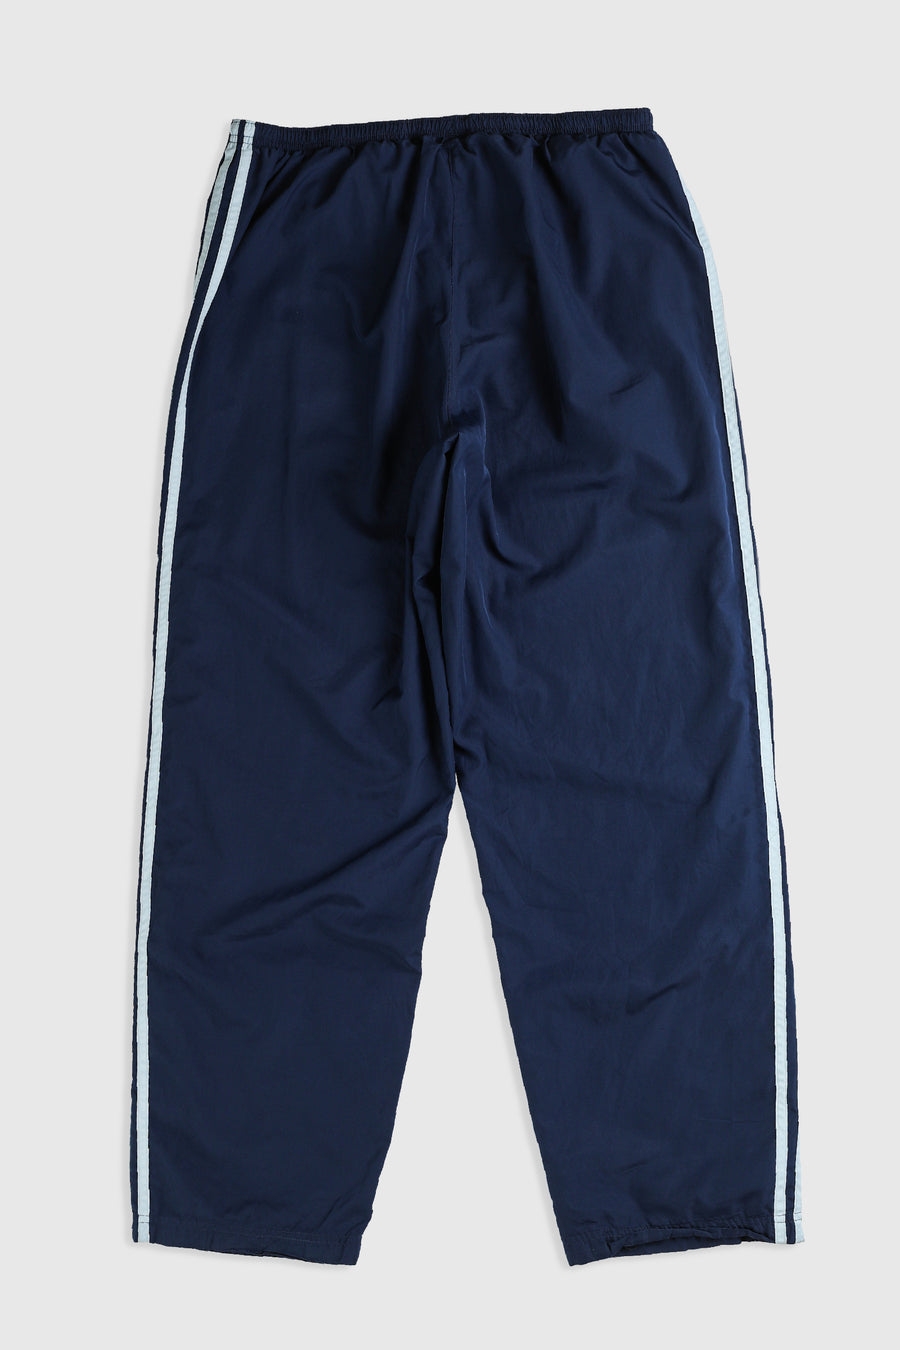 Vintage Adidas Windbreaker Pants - L